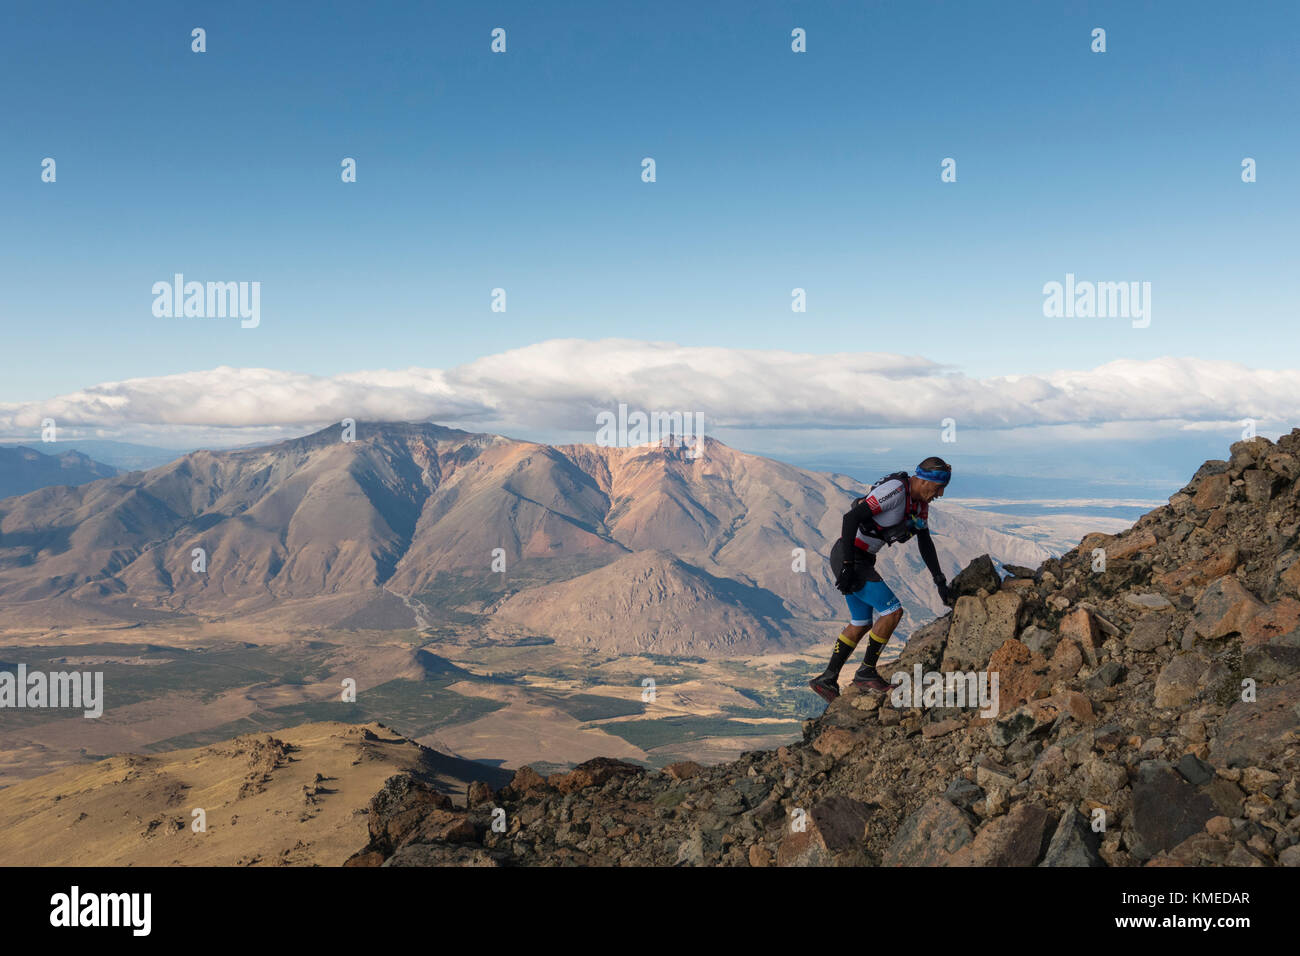 Rocky Mountain escalade homme contre les nuages et ciel, Esquel, Chubut, Argentine Banque D'Images